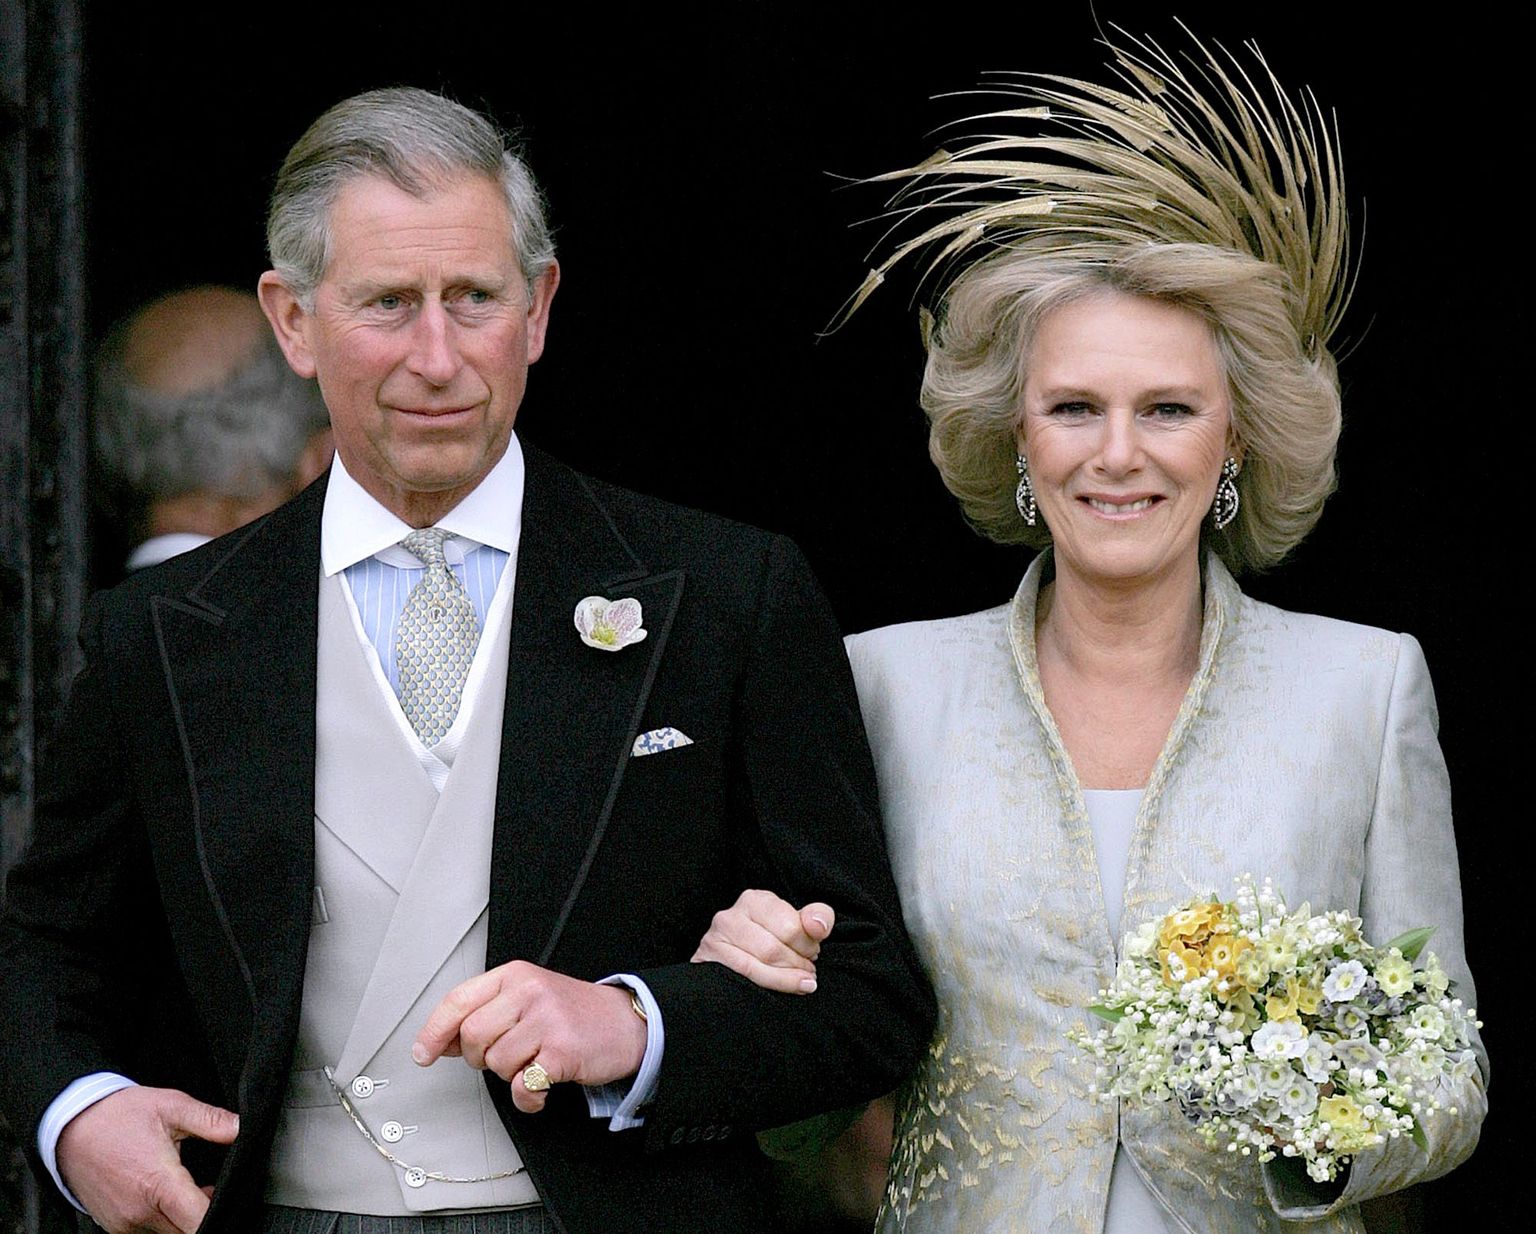 Charles ja Camilla aastal 2005 oma pulmades. Vana armuleek tõusis uuesti.